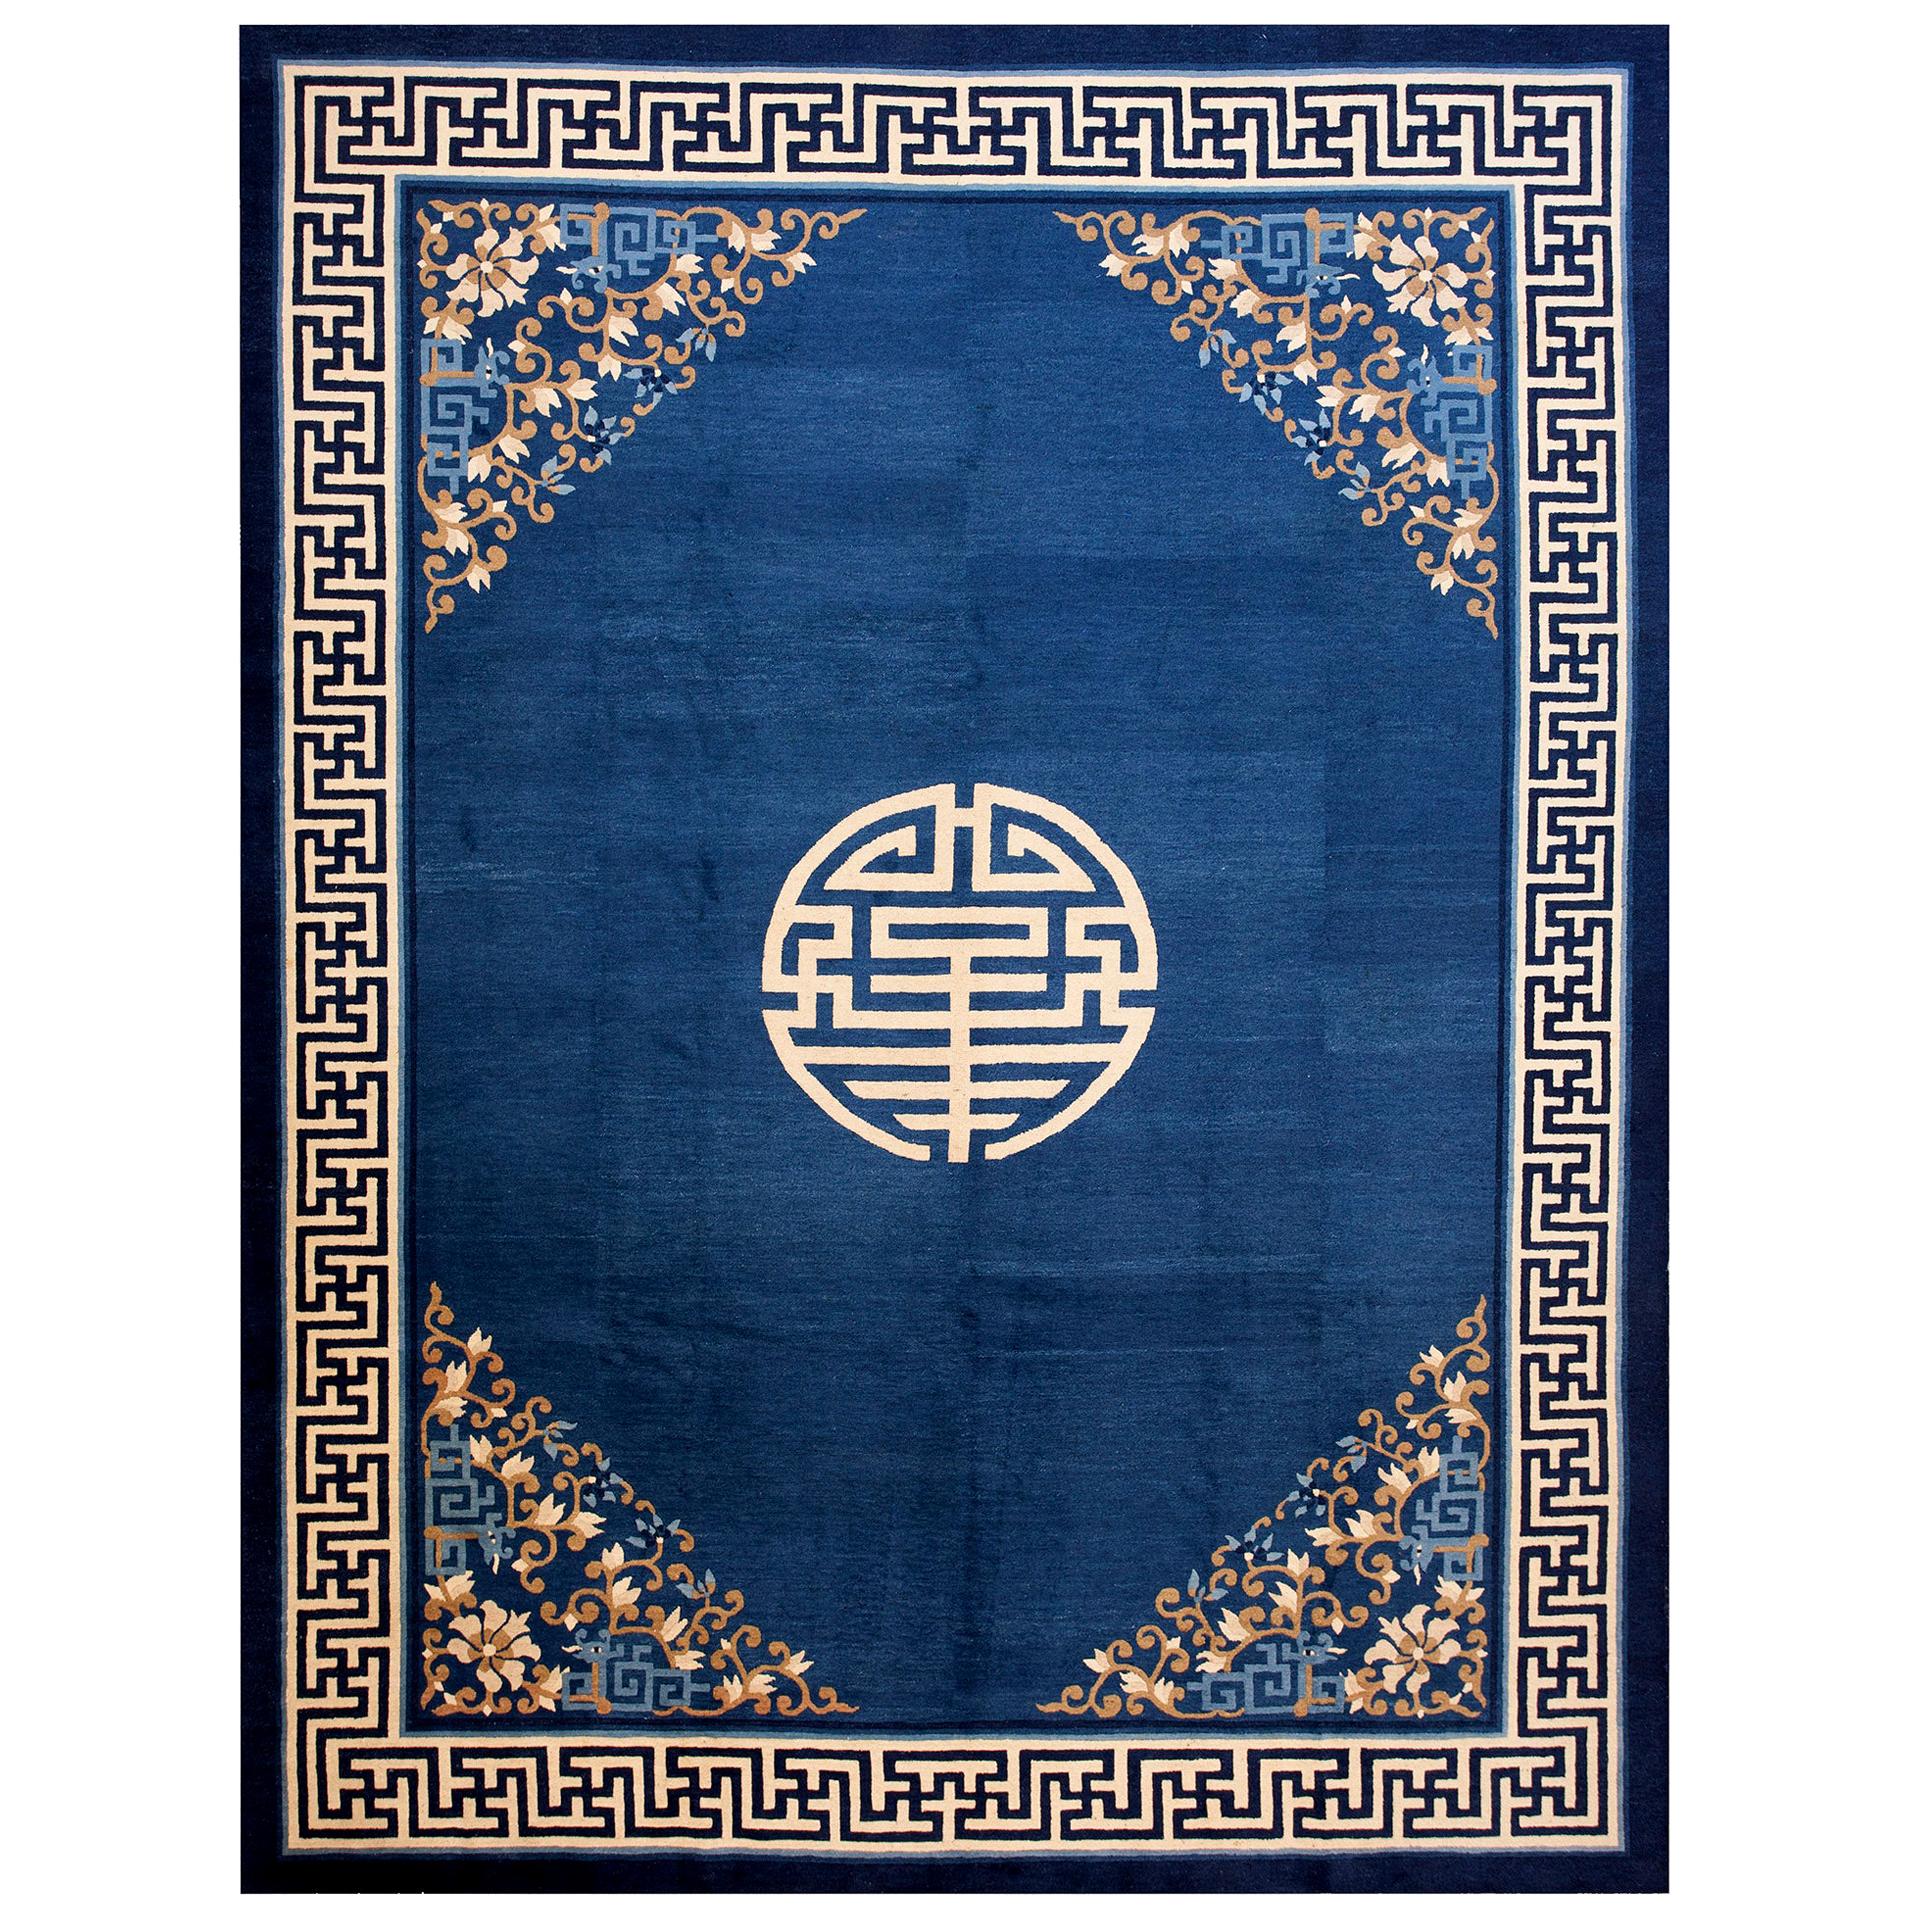 Chinesischer Peking-Teppich des frühen 20. Jahrhunderts ( 9'2" x 11'4" - 279 x 345")